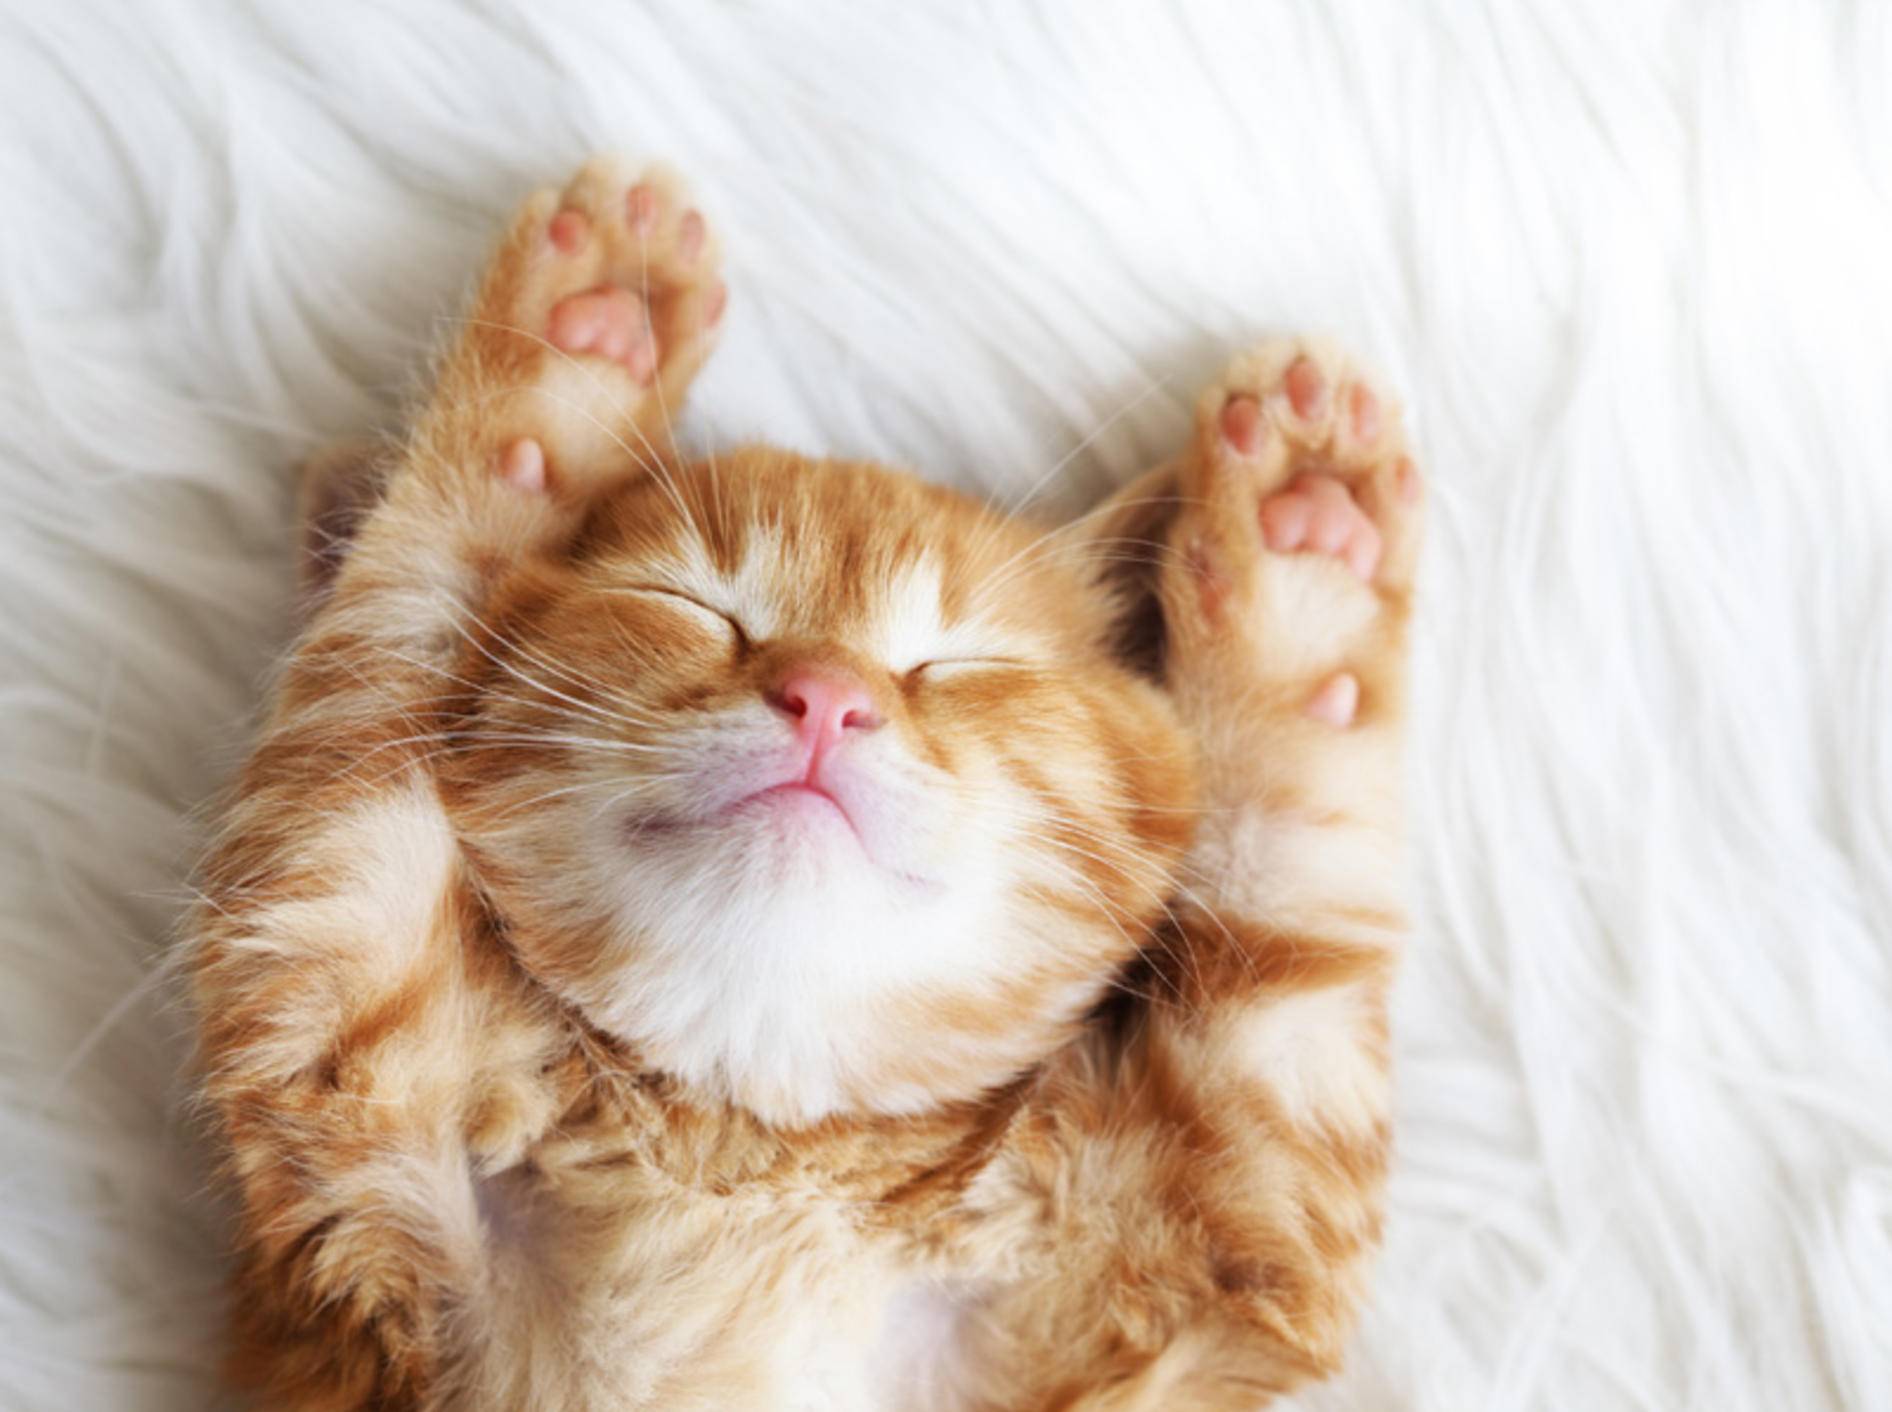 Von Katzenvideos scheint das Netz nicht genug zu bekommen - Bild: Shutterstock / Alena Ozerova